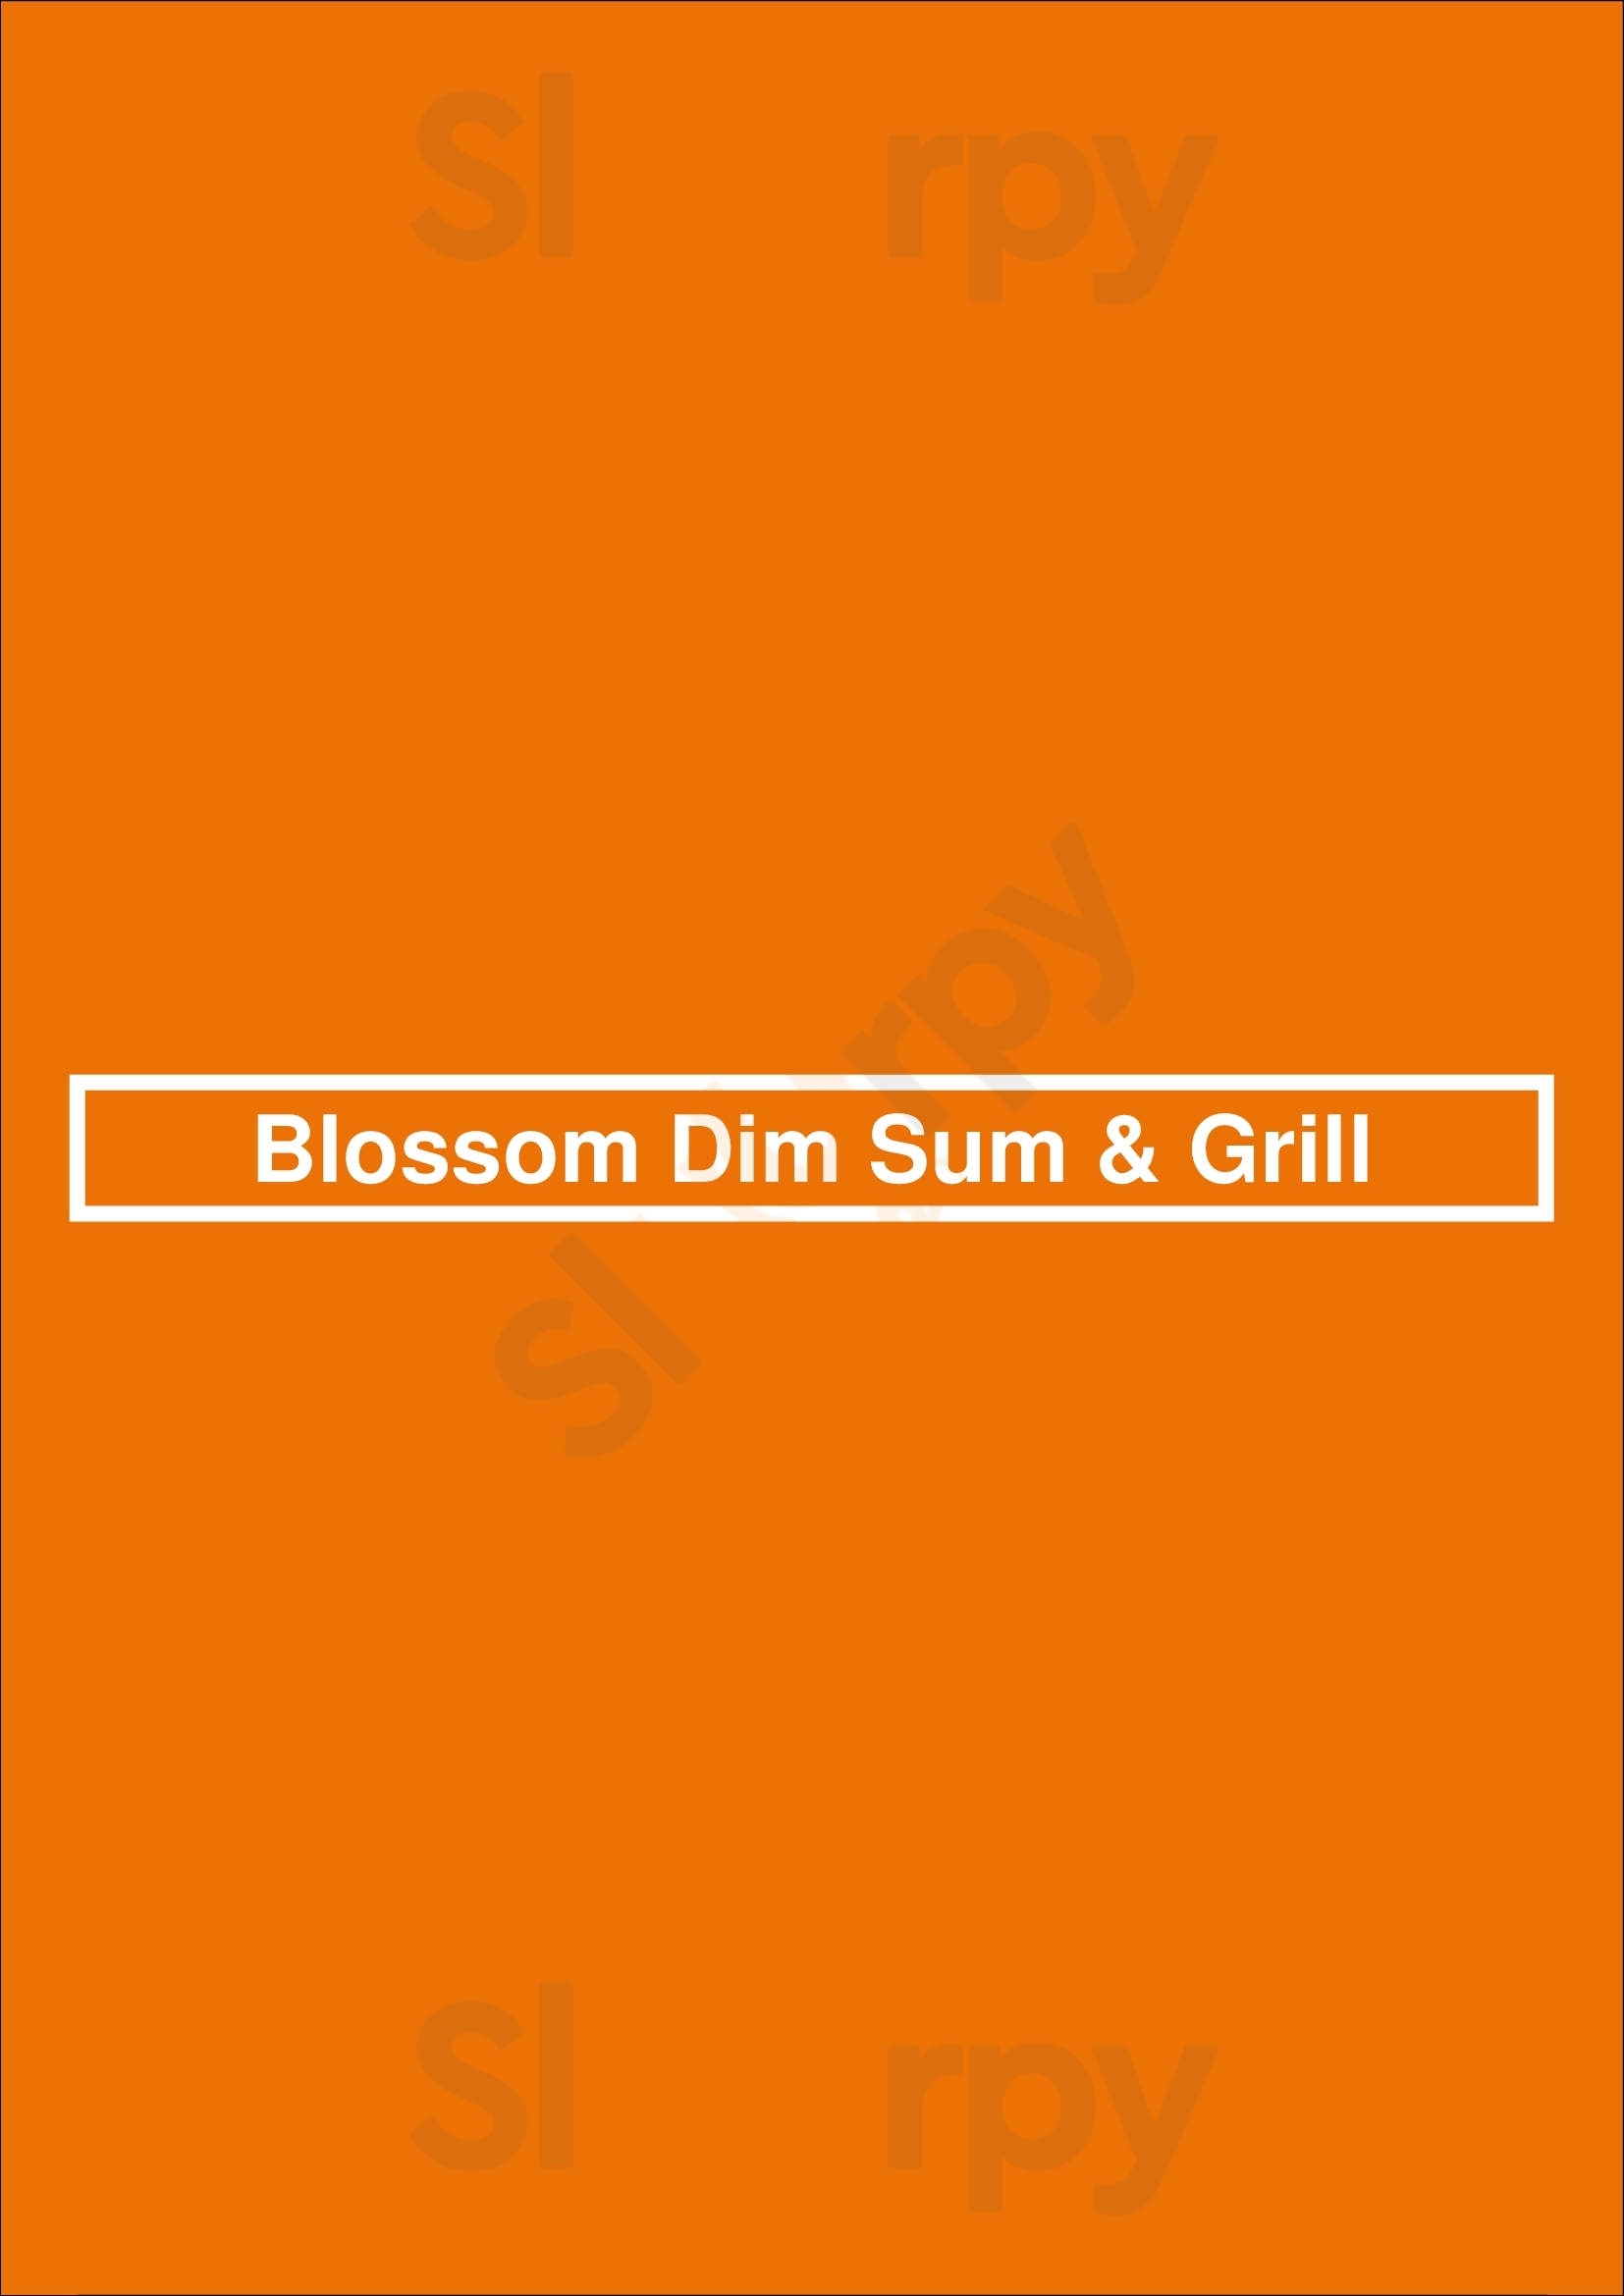 Blossom Dim Sum & Grill Vancouver Menu - 1